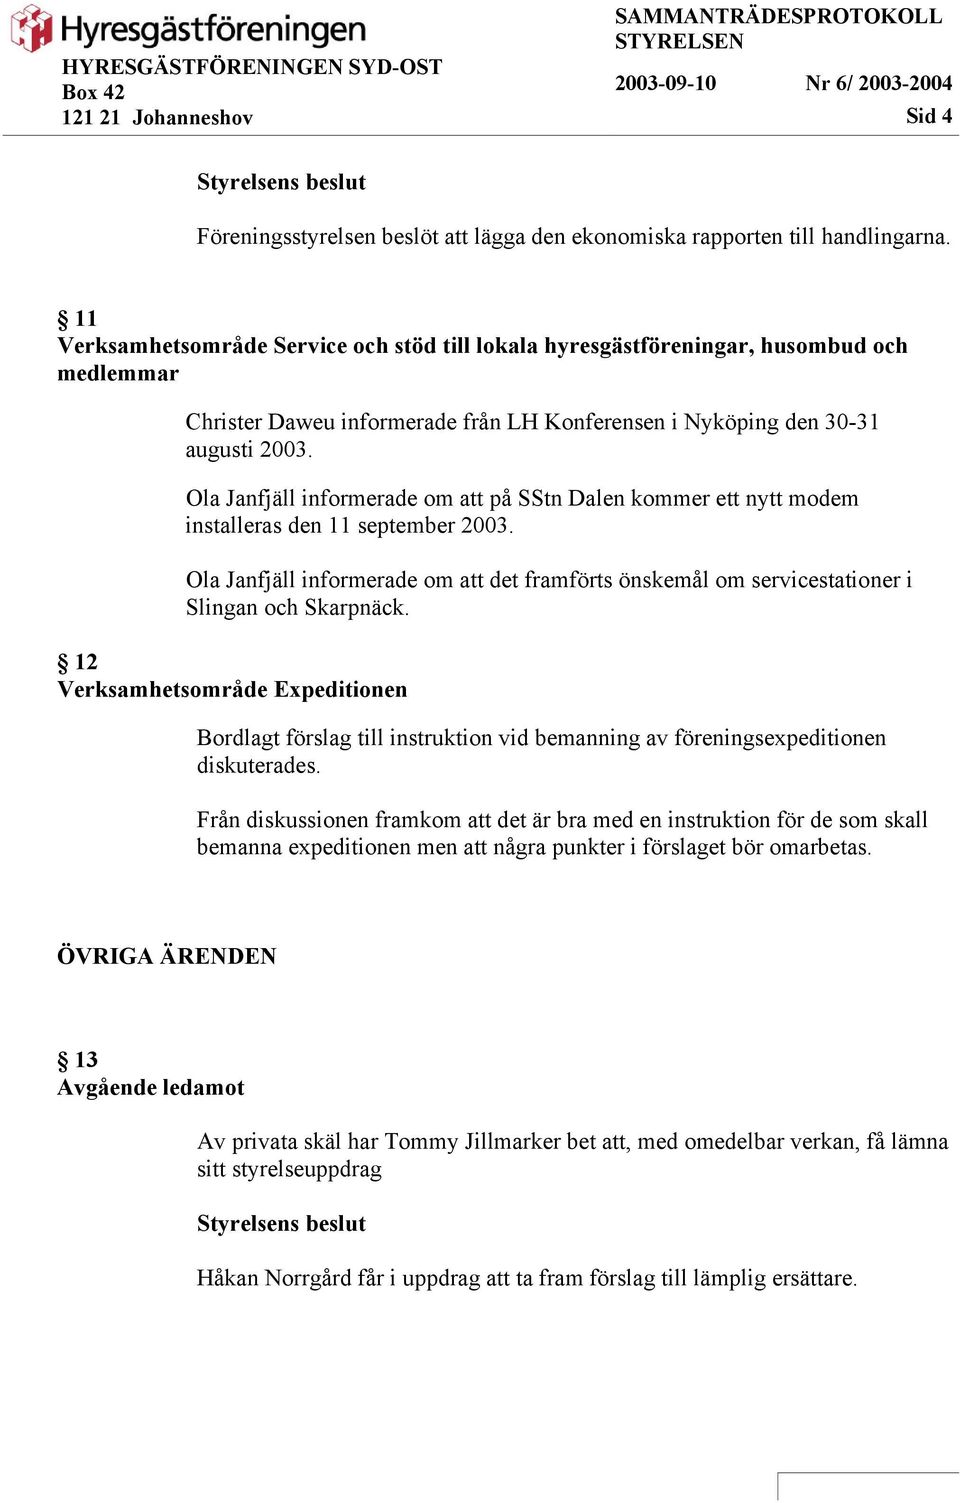 Ola Janfjäll informerade om att på SStn Dalen kommer ett nytt modem installeras den 11 september 2003.